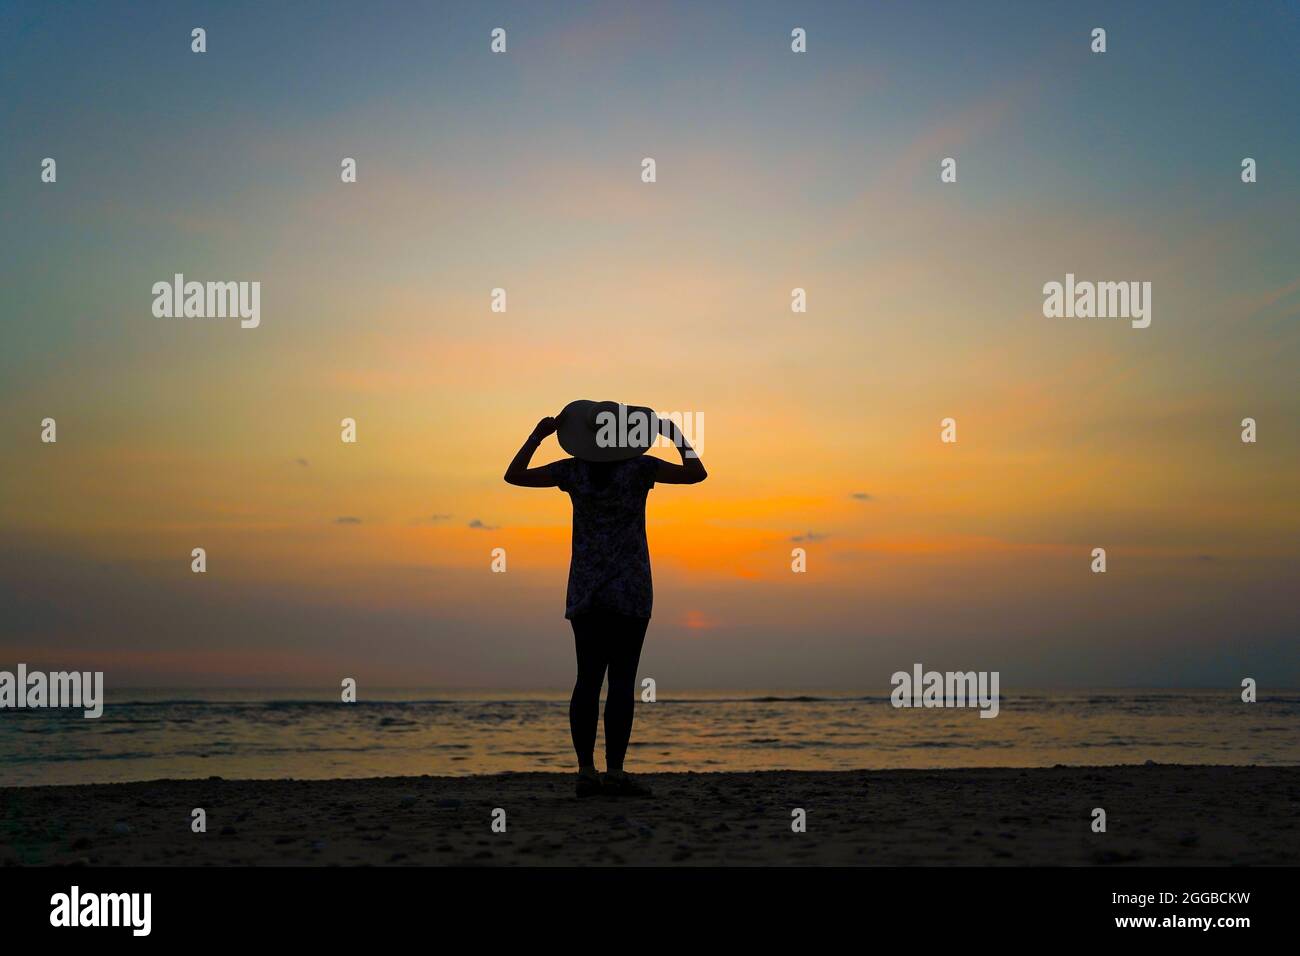 Rückansicht Silhouette einer jungen Frau mit Blick auf das Meer bei Sonnenuntergang an einem britischen Strand, Aufenthalt Sommerurlaub, hält sich an ihrem großen Floppy Sonnenhut. Stockfoto